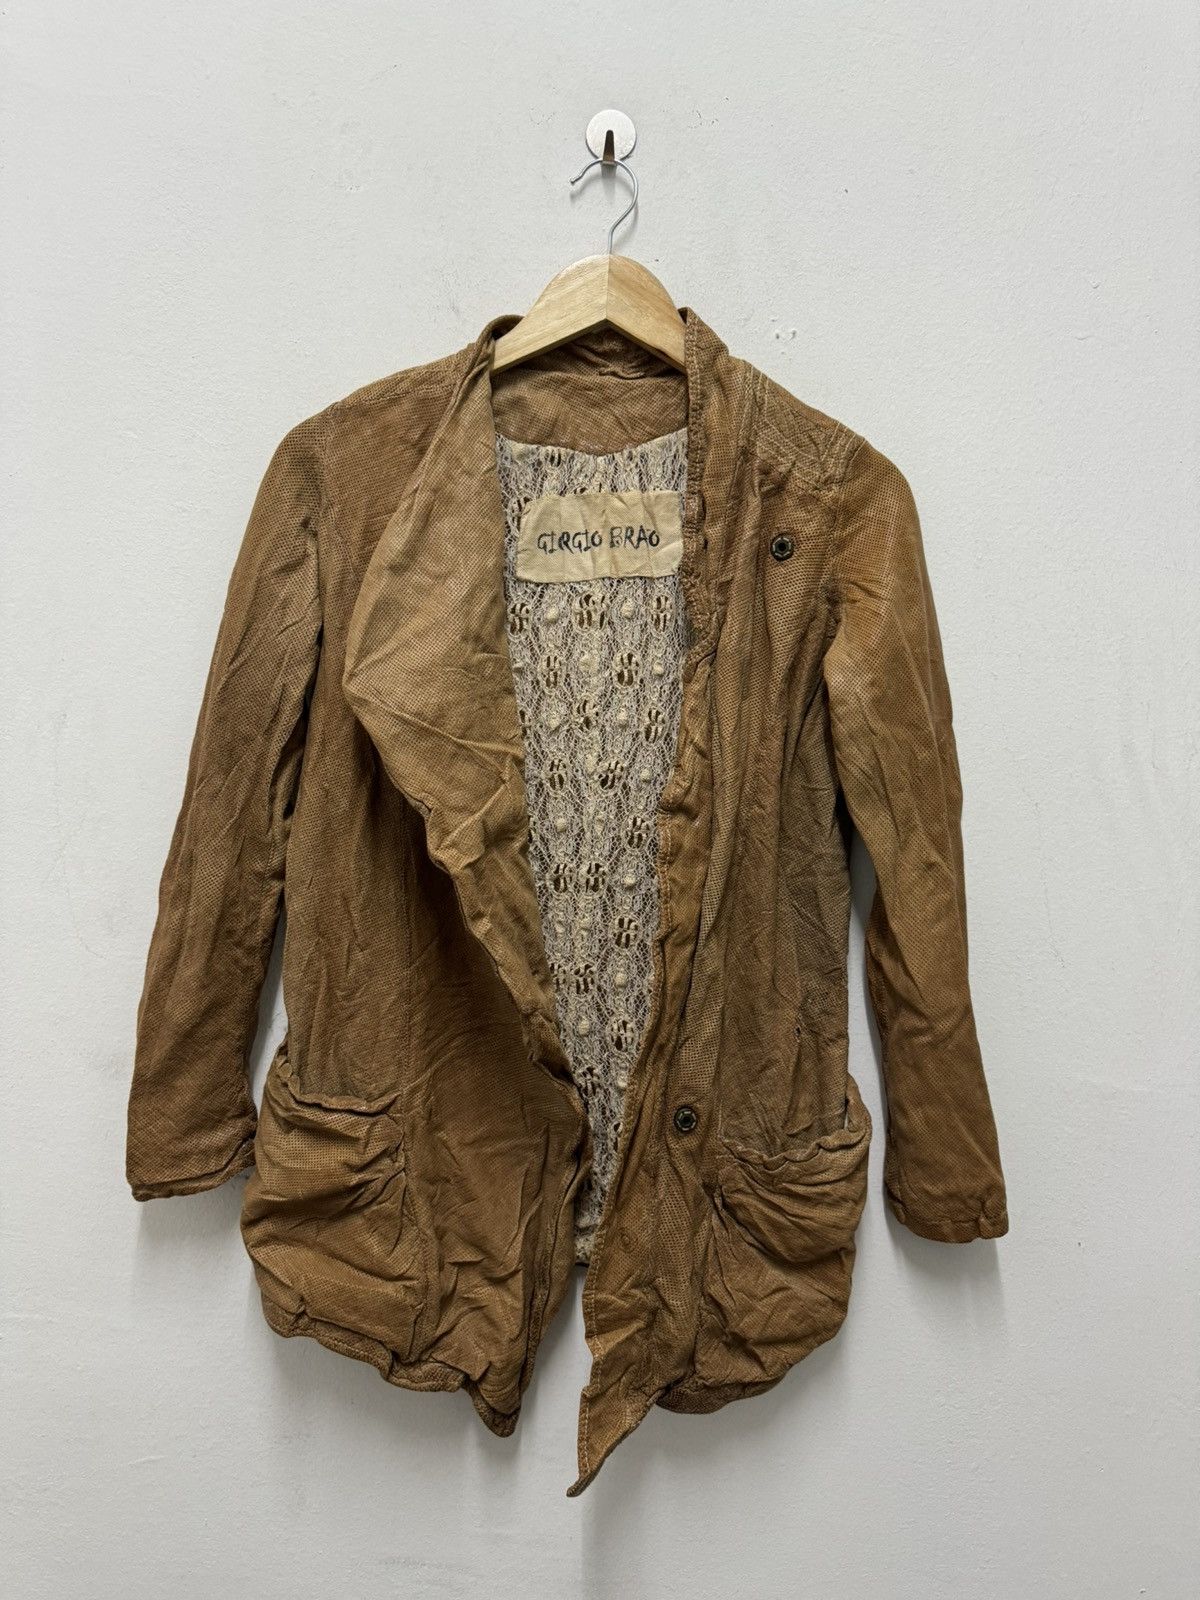 Vintage Giorgio Brato leather jacket Size US XXS / EU 40 - 8 Thumbnail